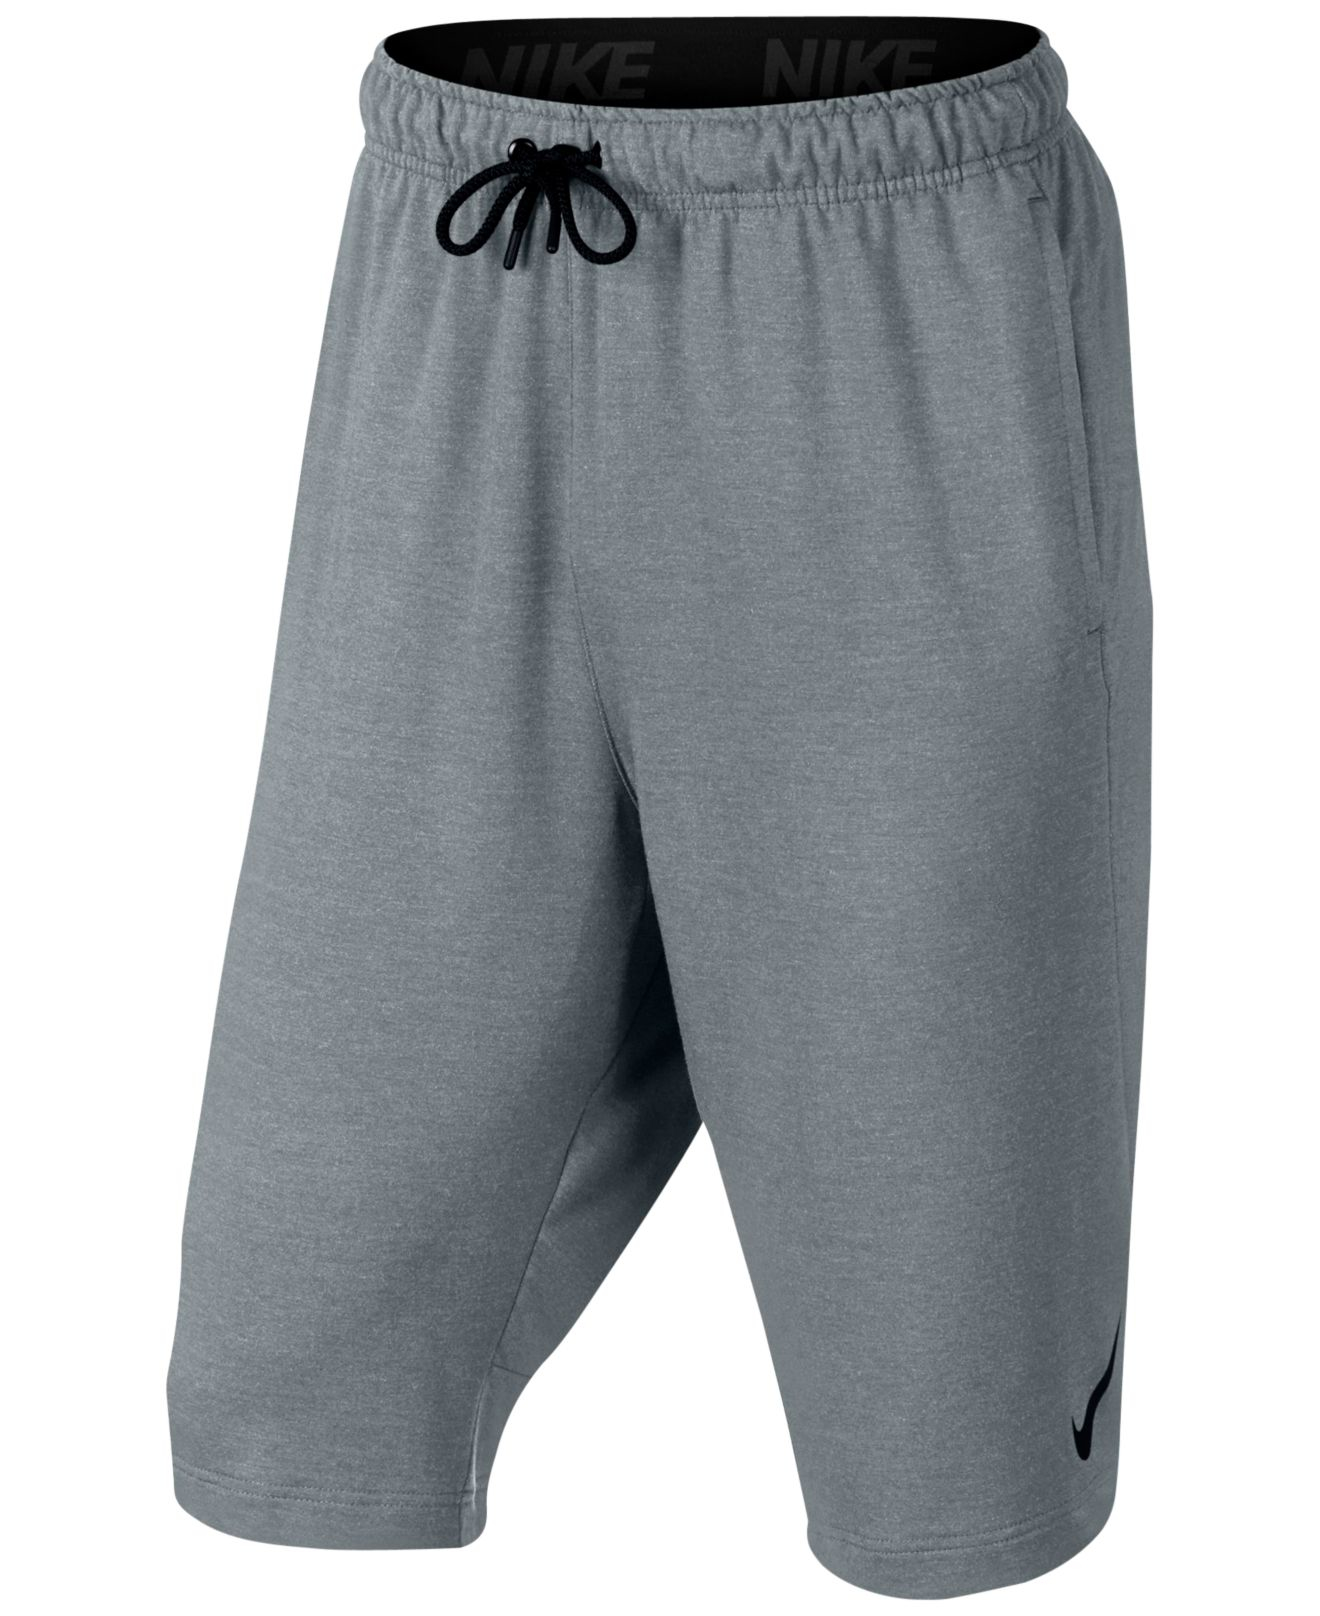 Lyst - Nike Men's Dri-fit Fleece Long Shorts in Gray for Men